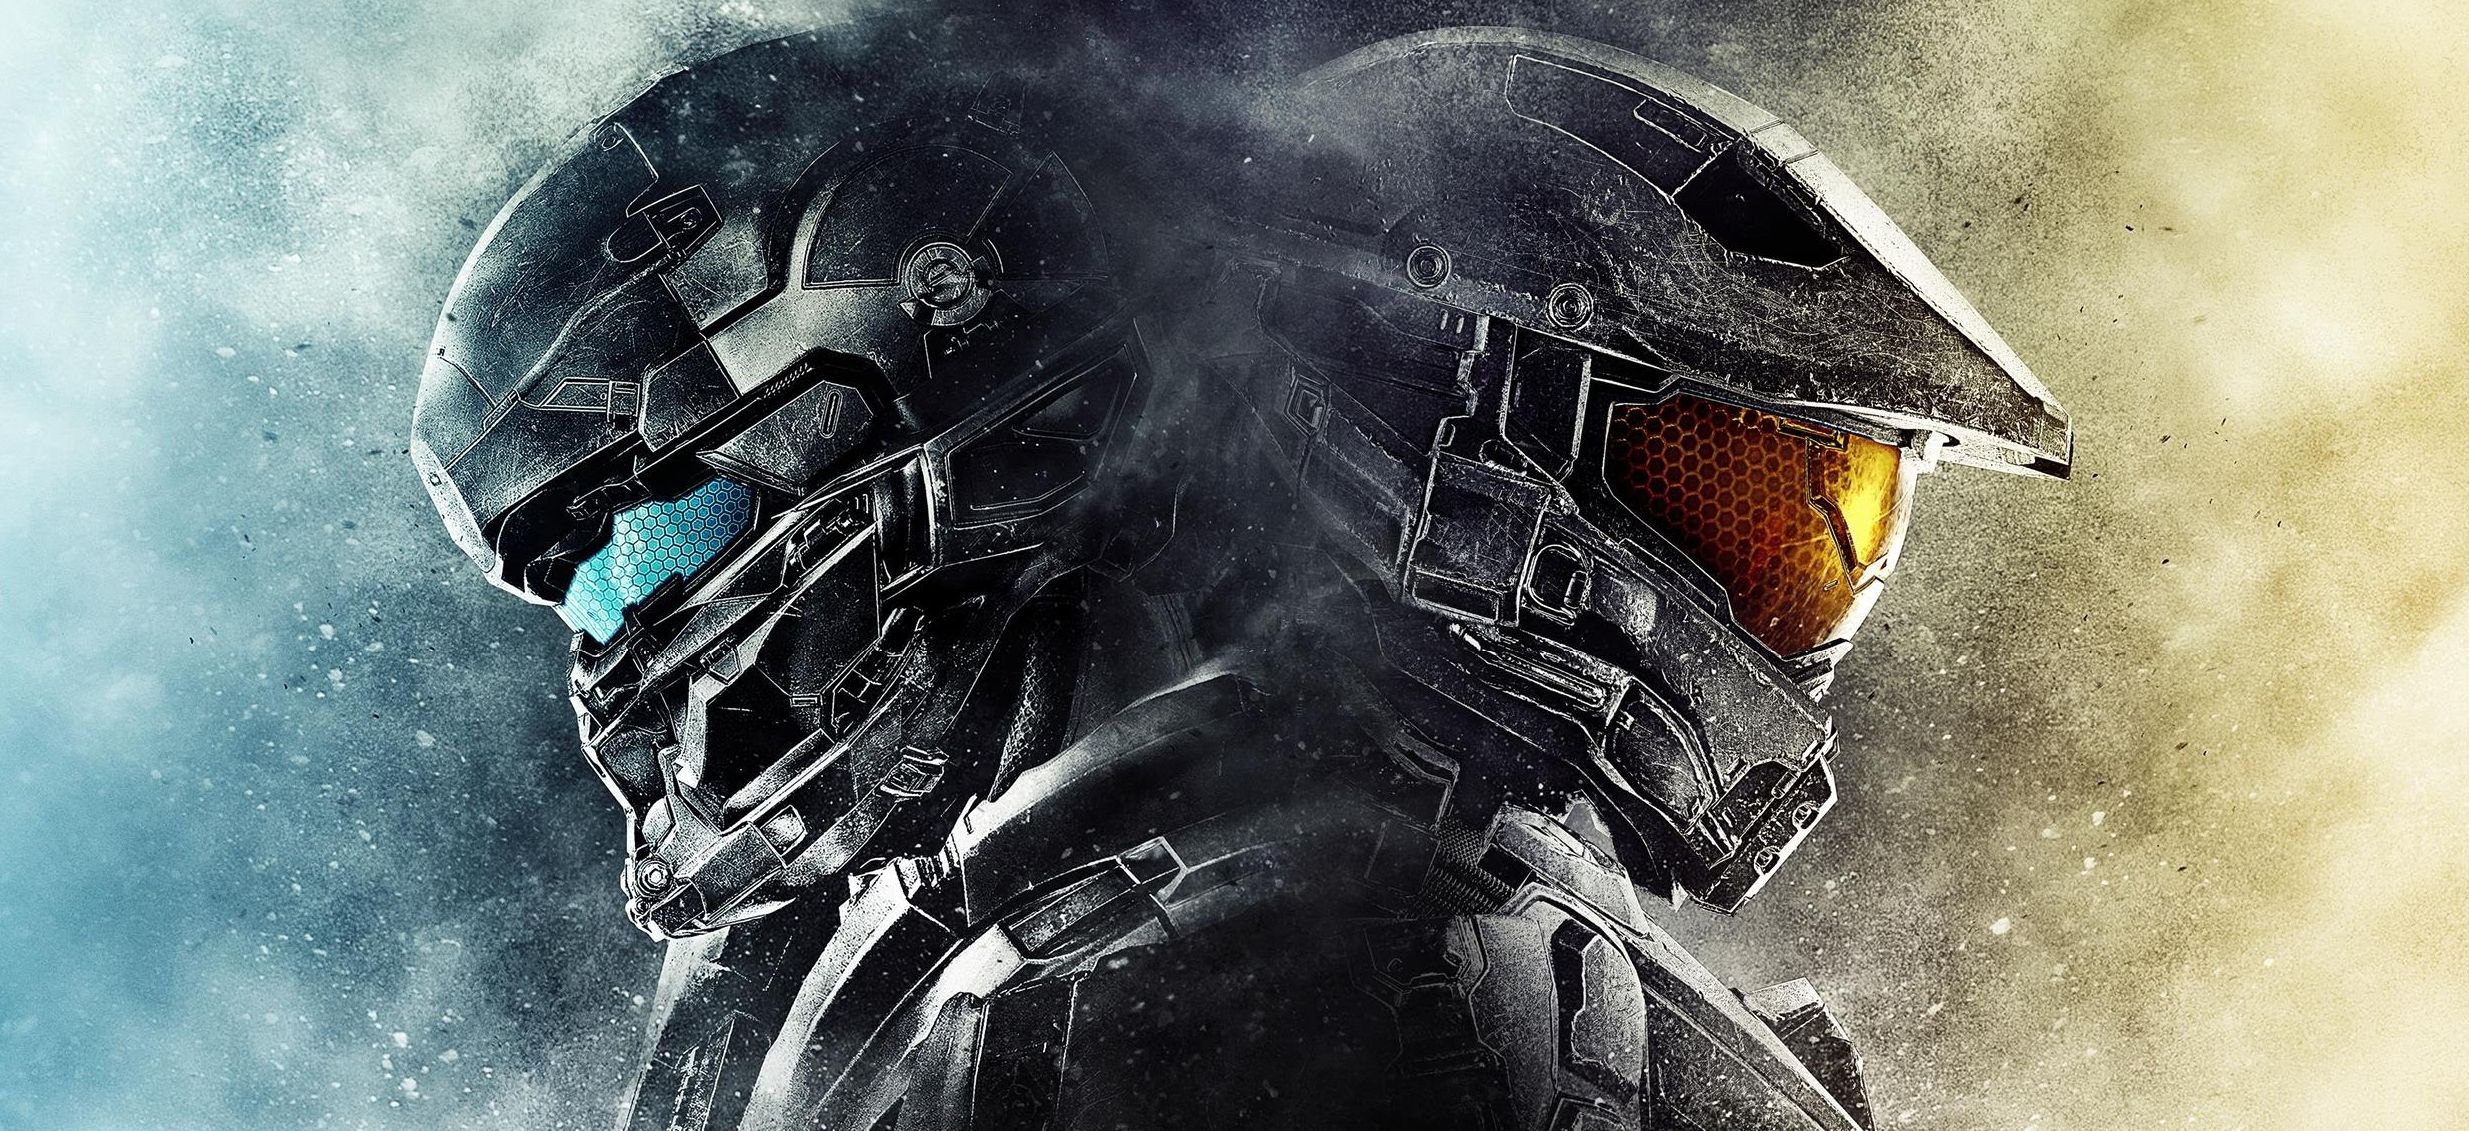 Halo 5: Guardian gratis per una settimana per celebrare l'update gratuito Warzone Firefight